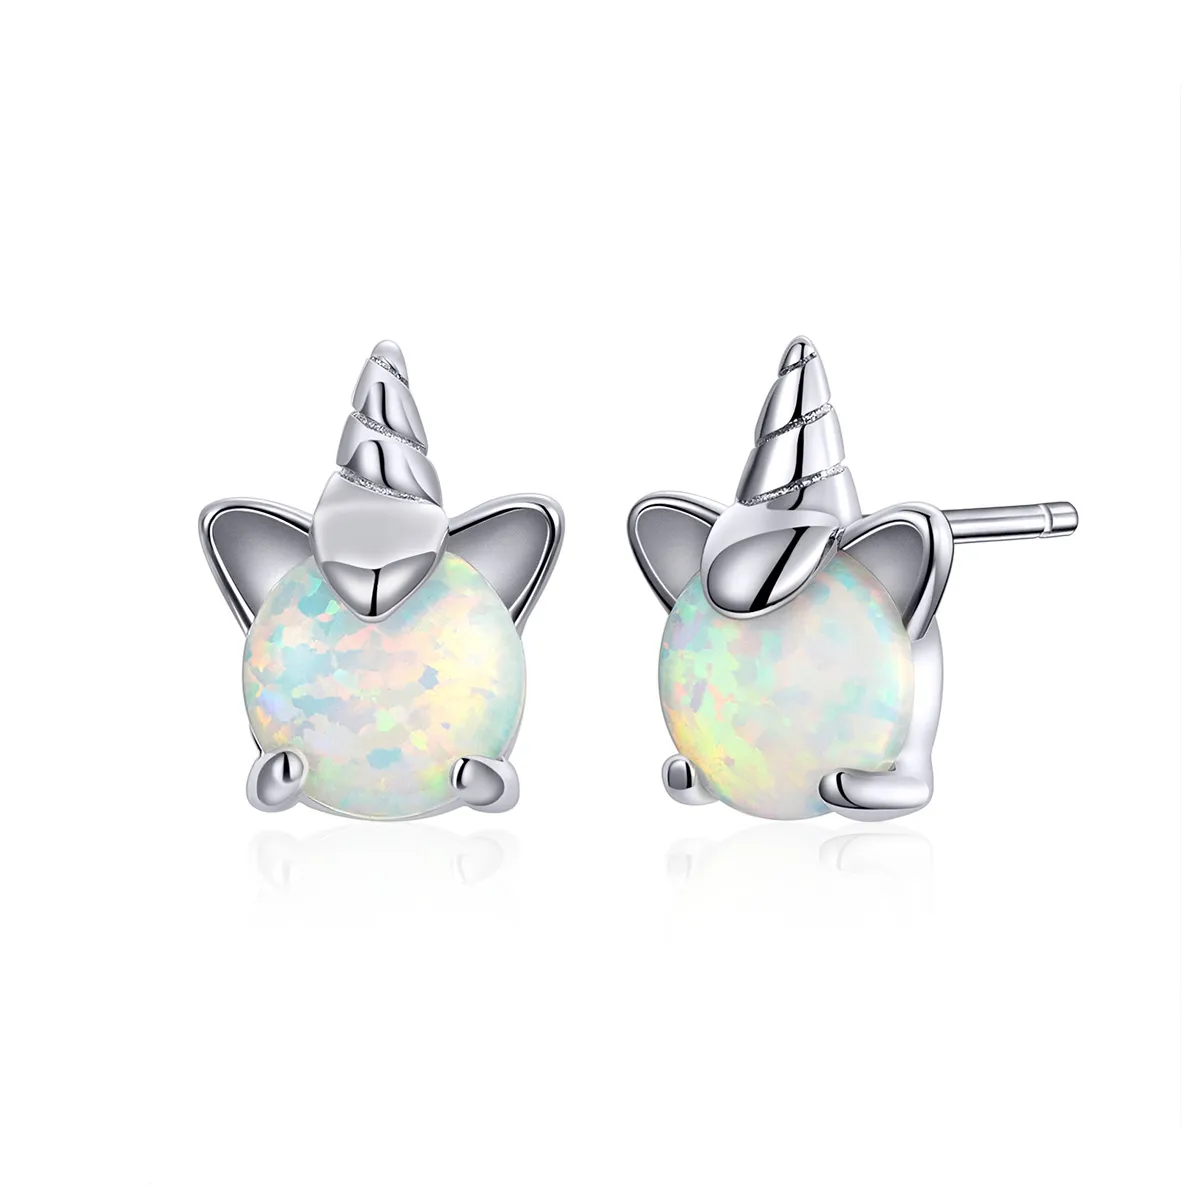 Pandora Style Silver Cute Unicorn Stud Earrings - SCE737